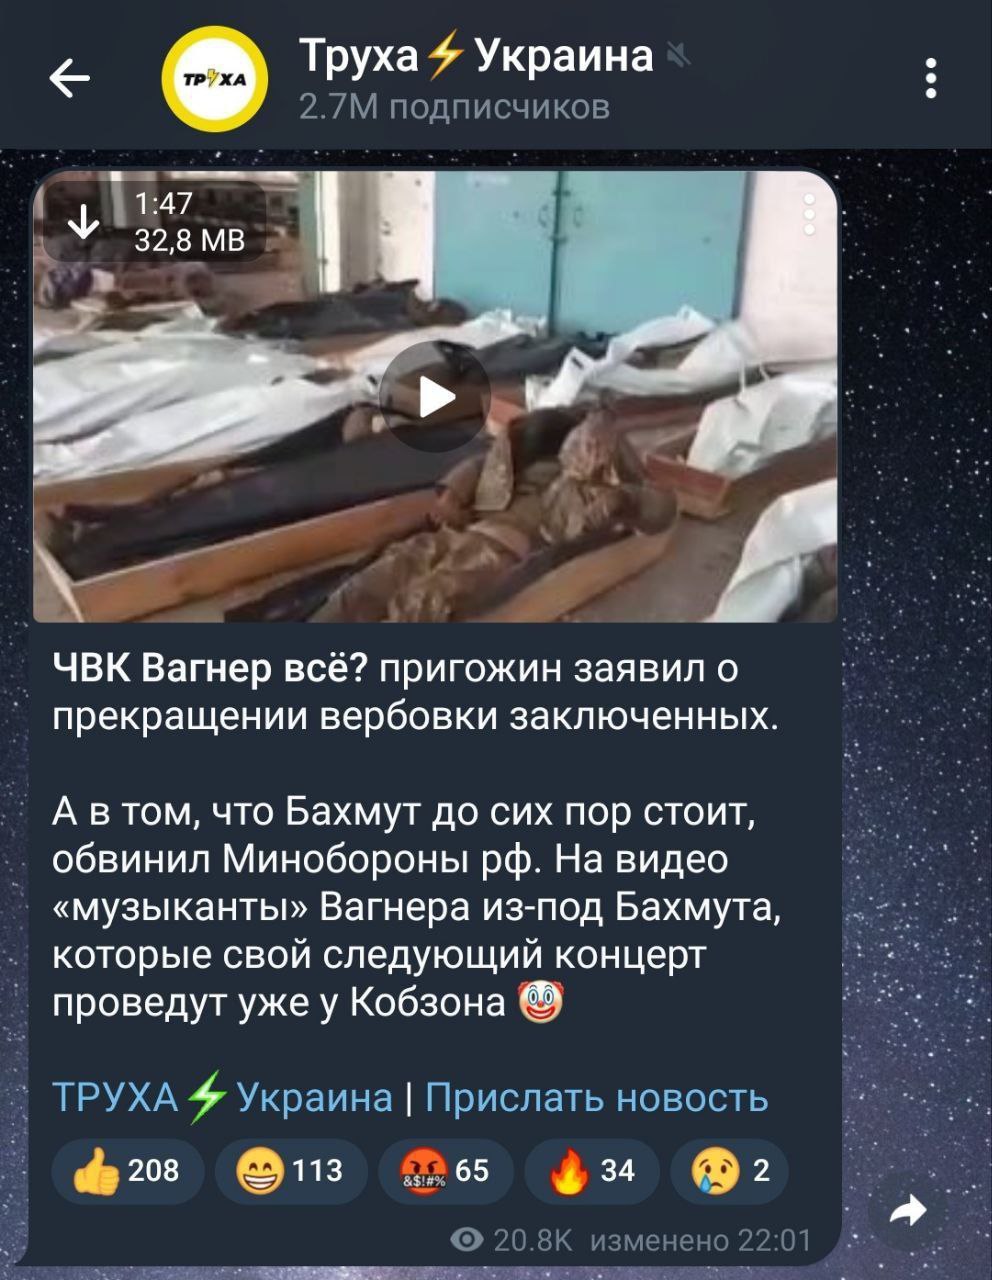 Труха телеграмм война на украине видео боевых действий сейчас фото 11